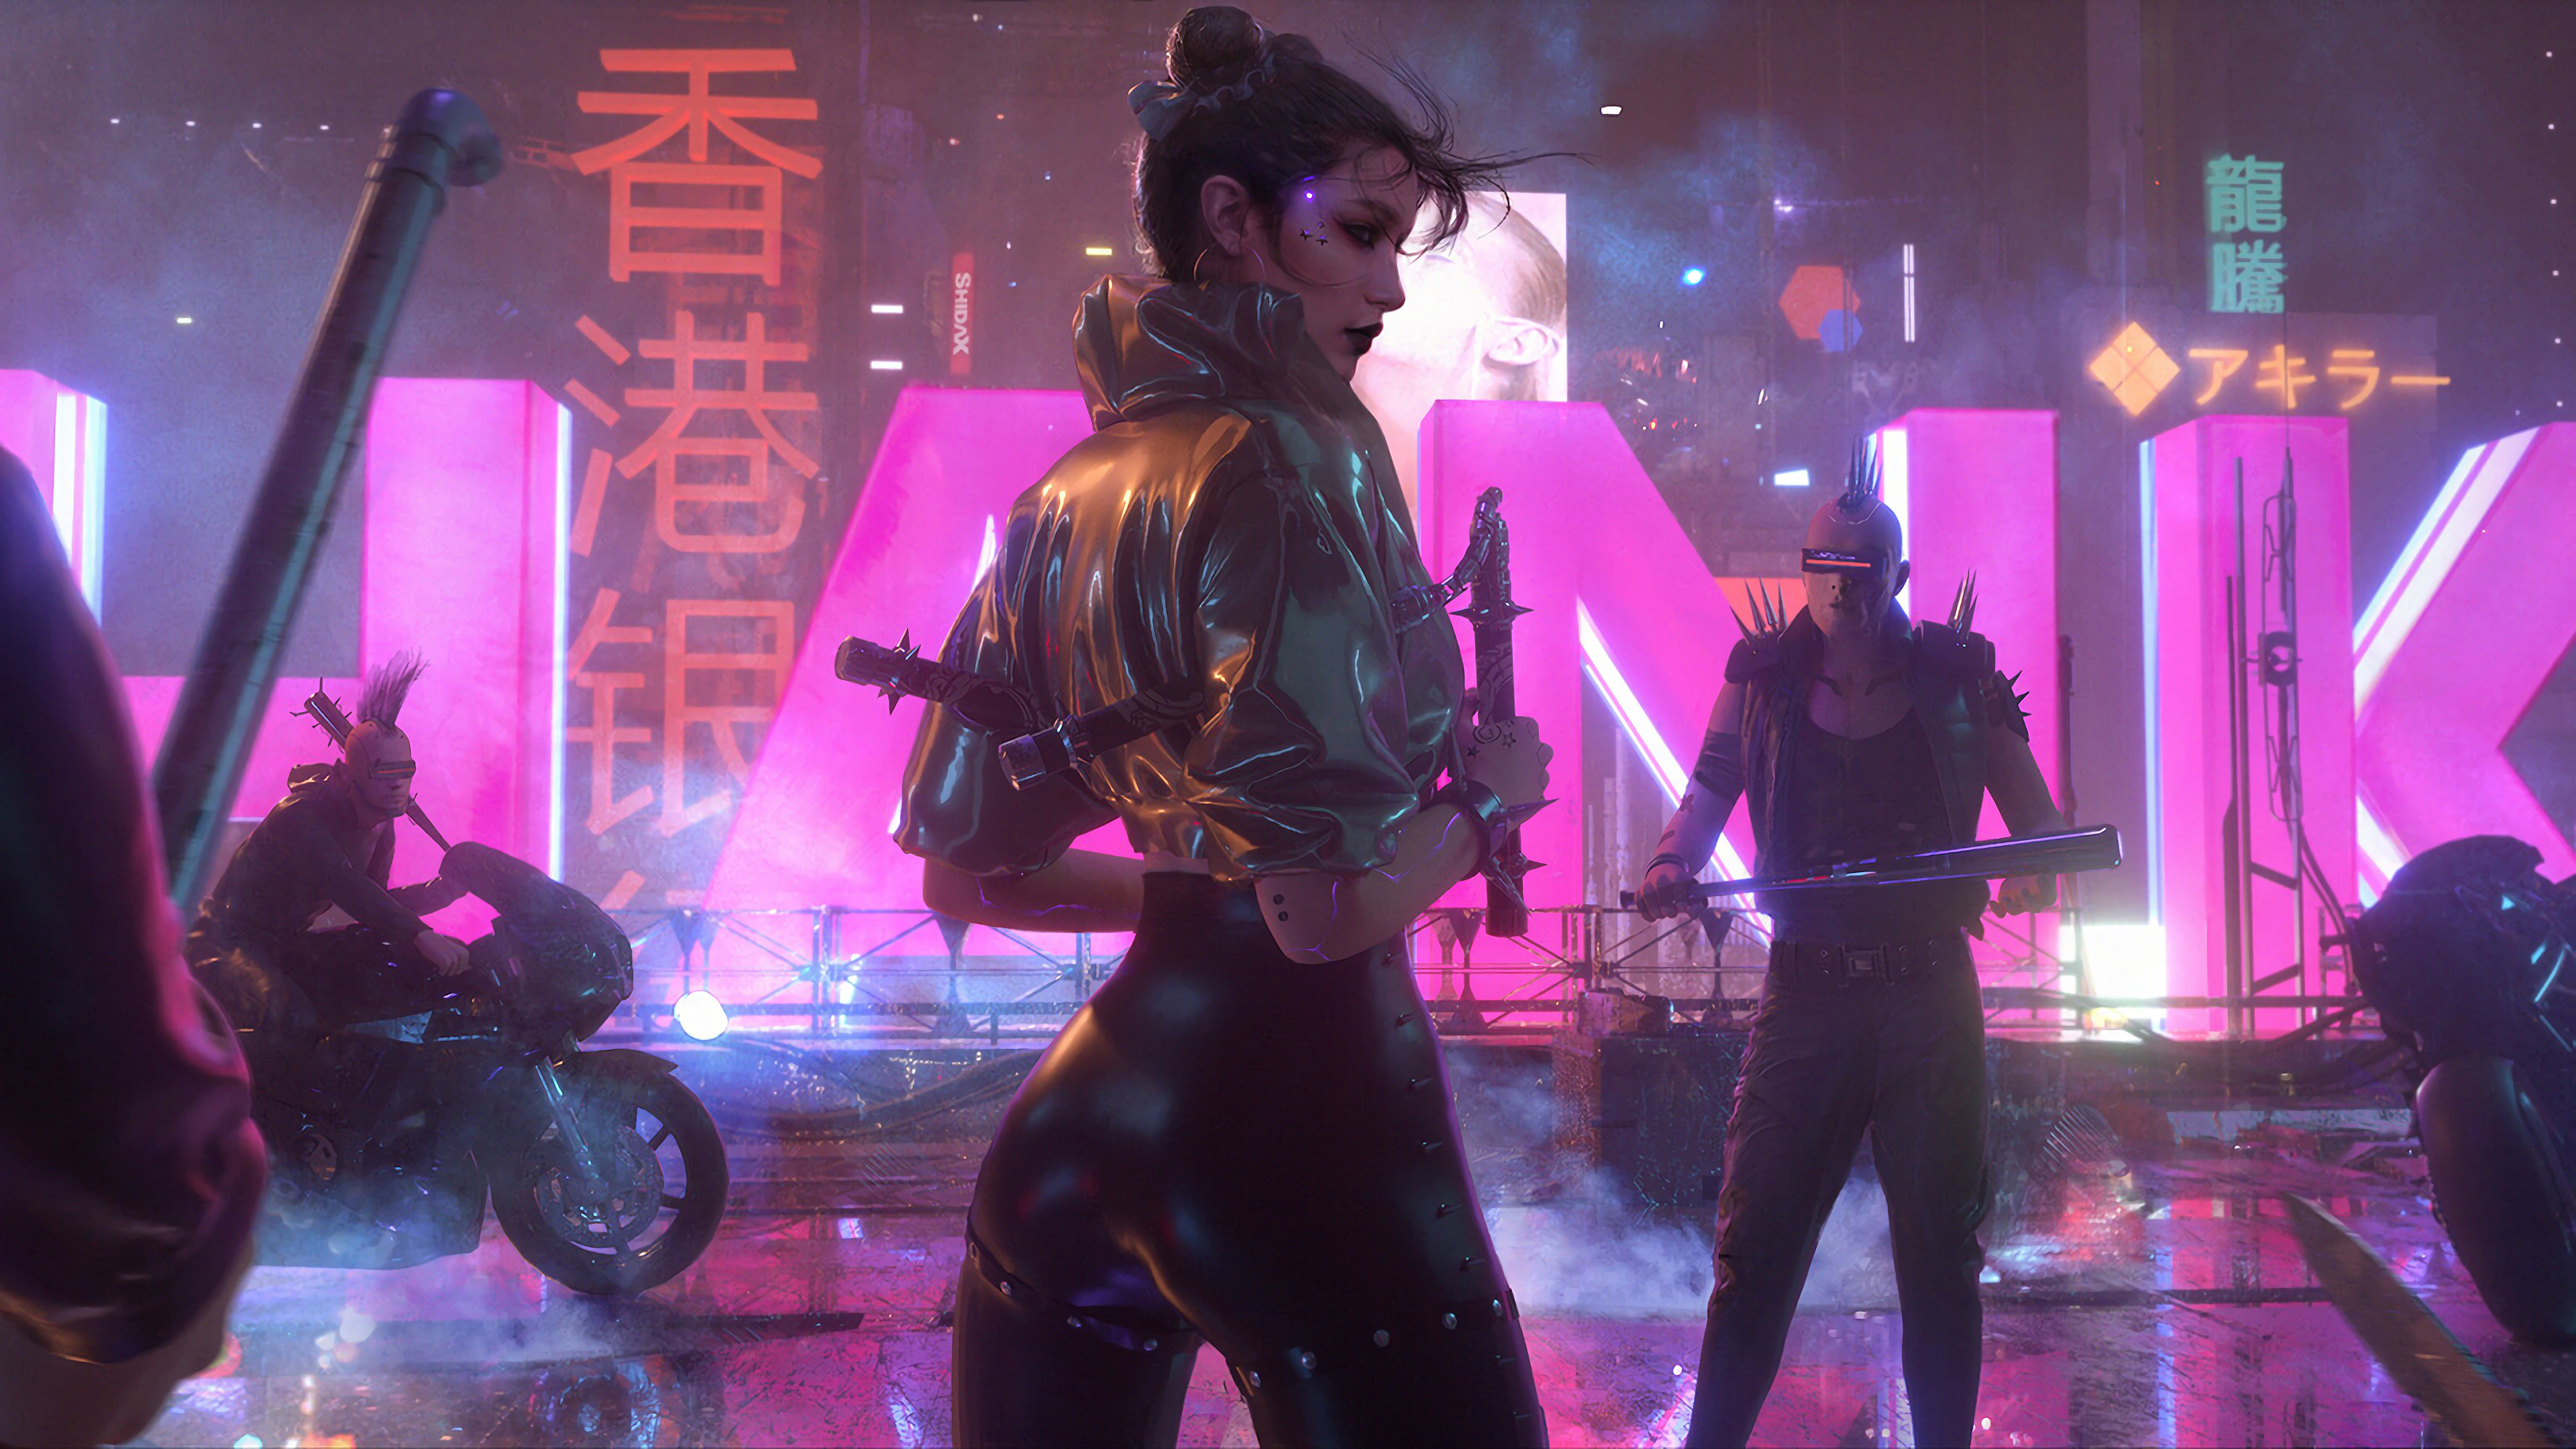 Woman In Cyberpunk City
 Wallpapers